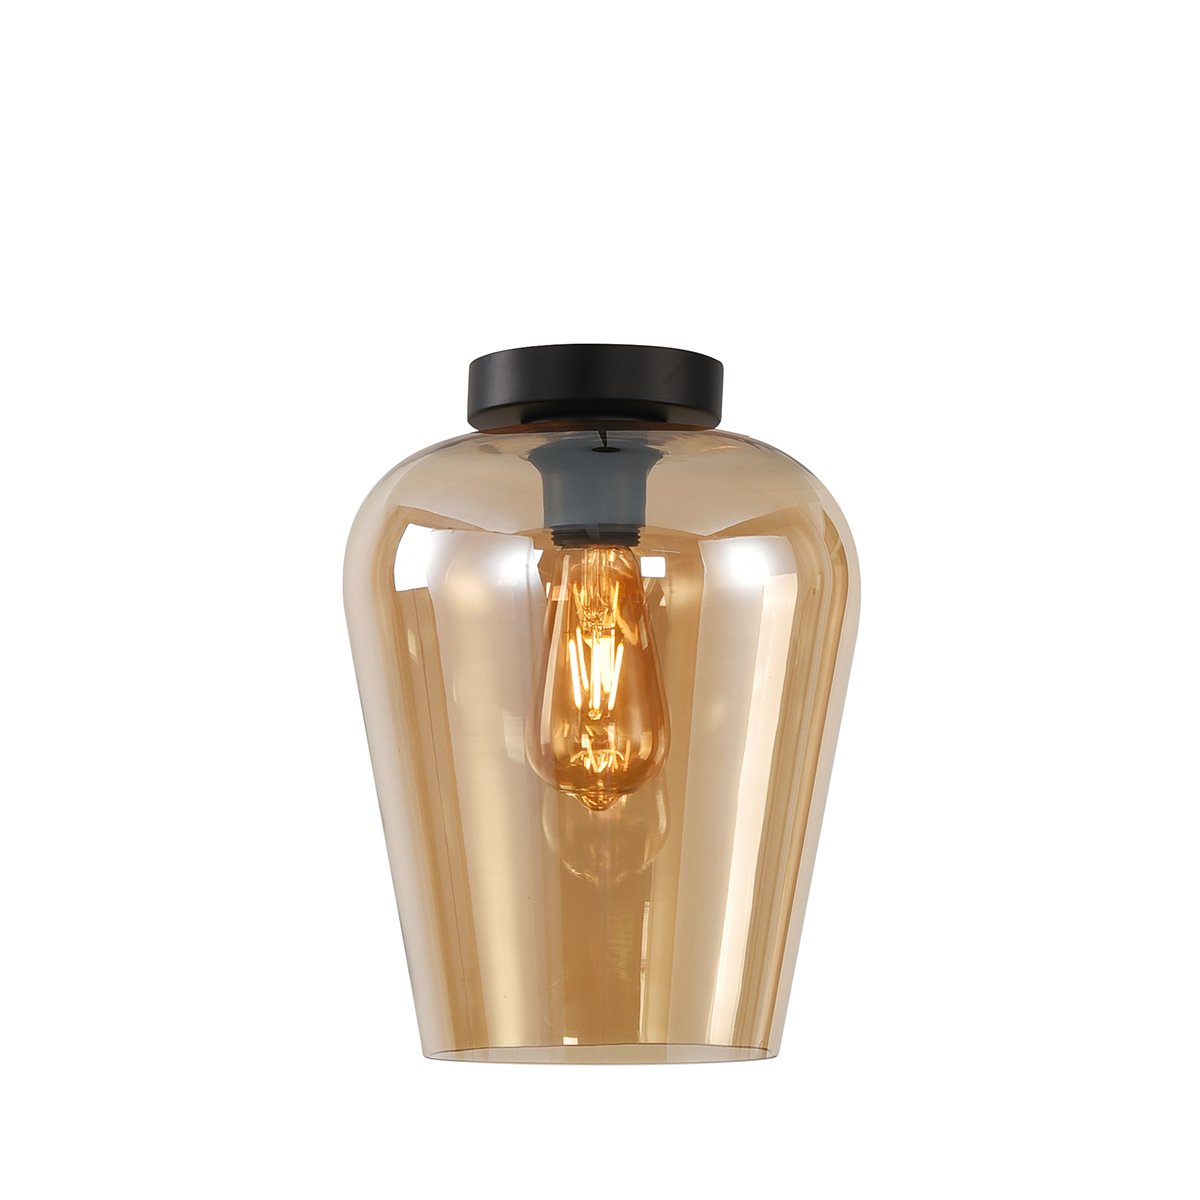 Ceiling light amber glass Agordo - Ø 24 cm